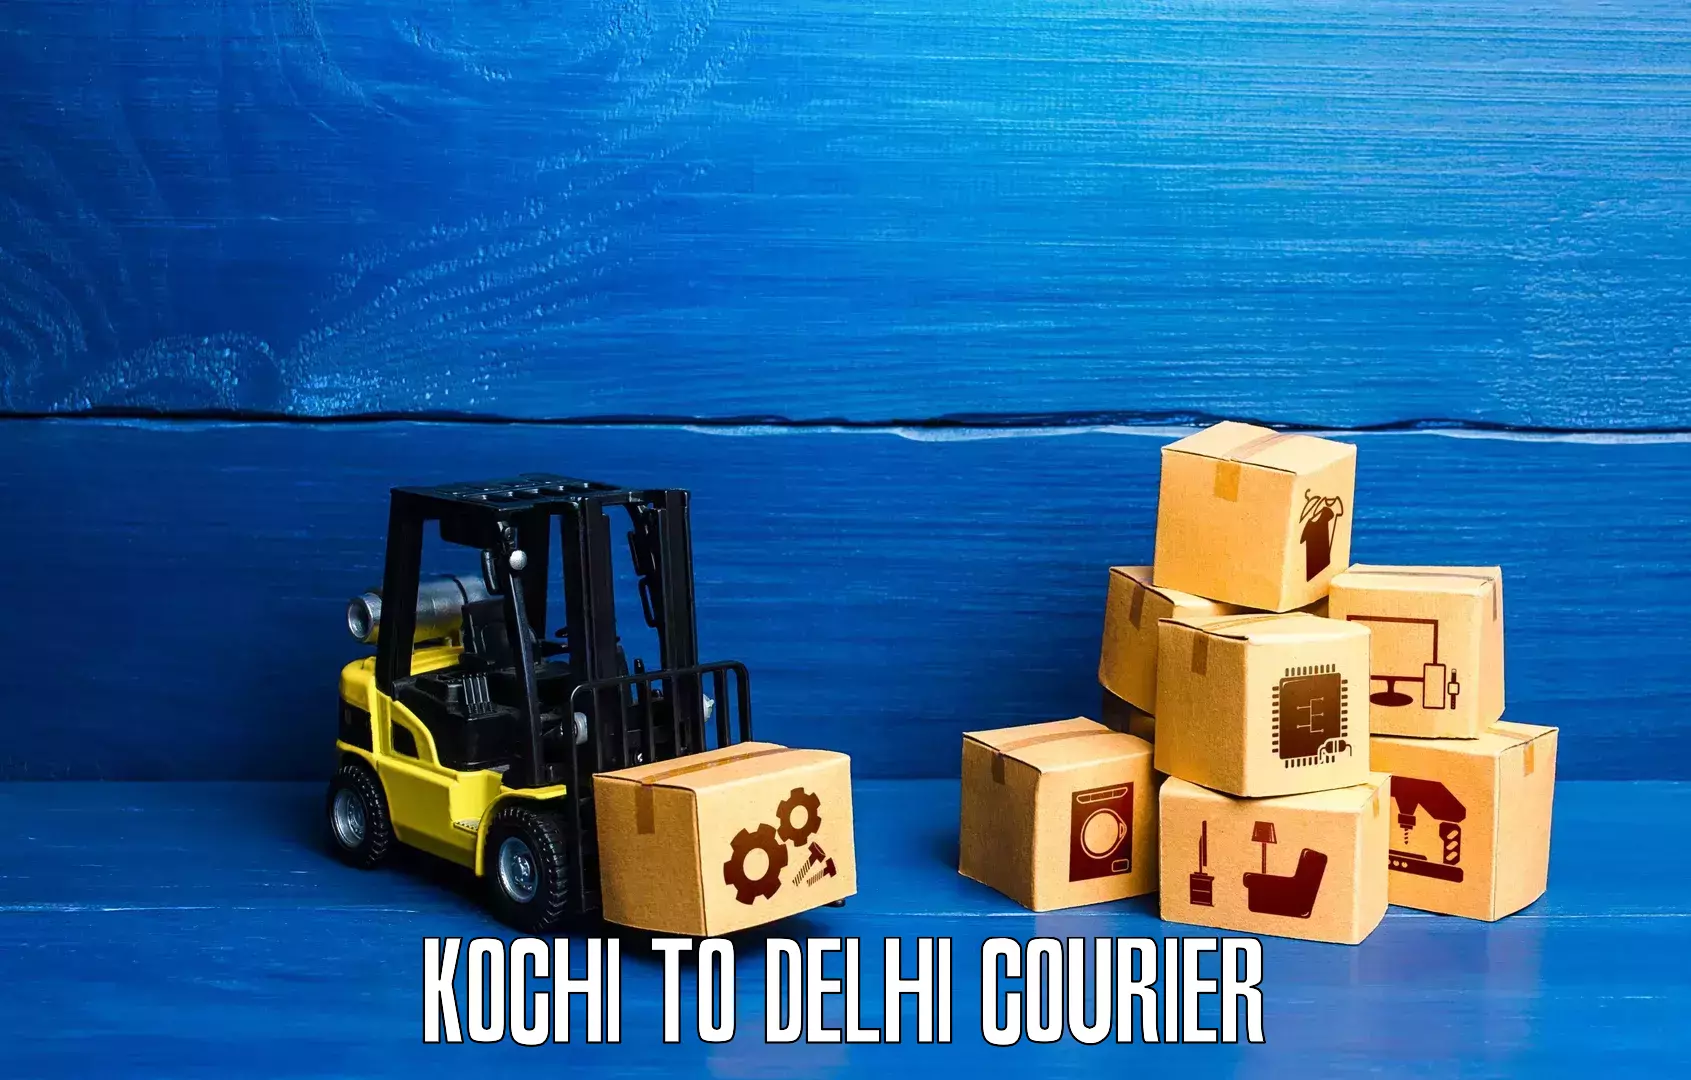 Quick dispatch service Kochi to Delhi